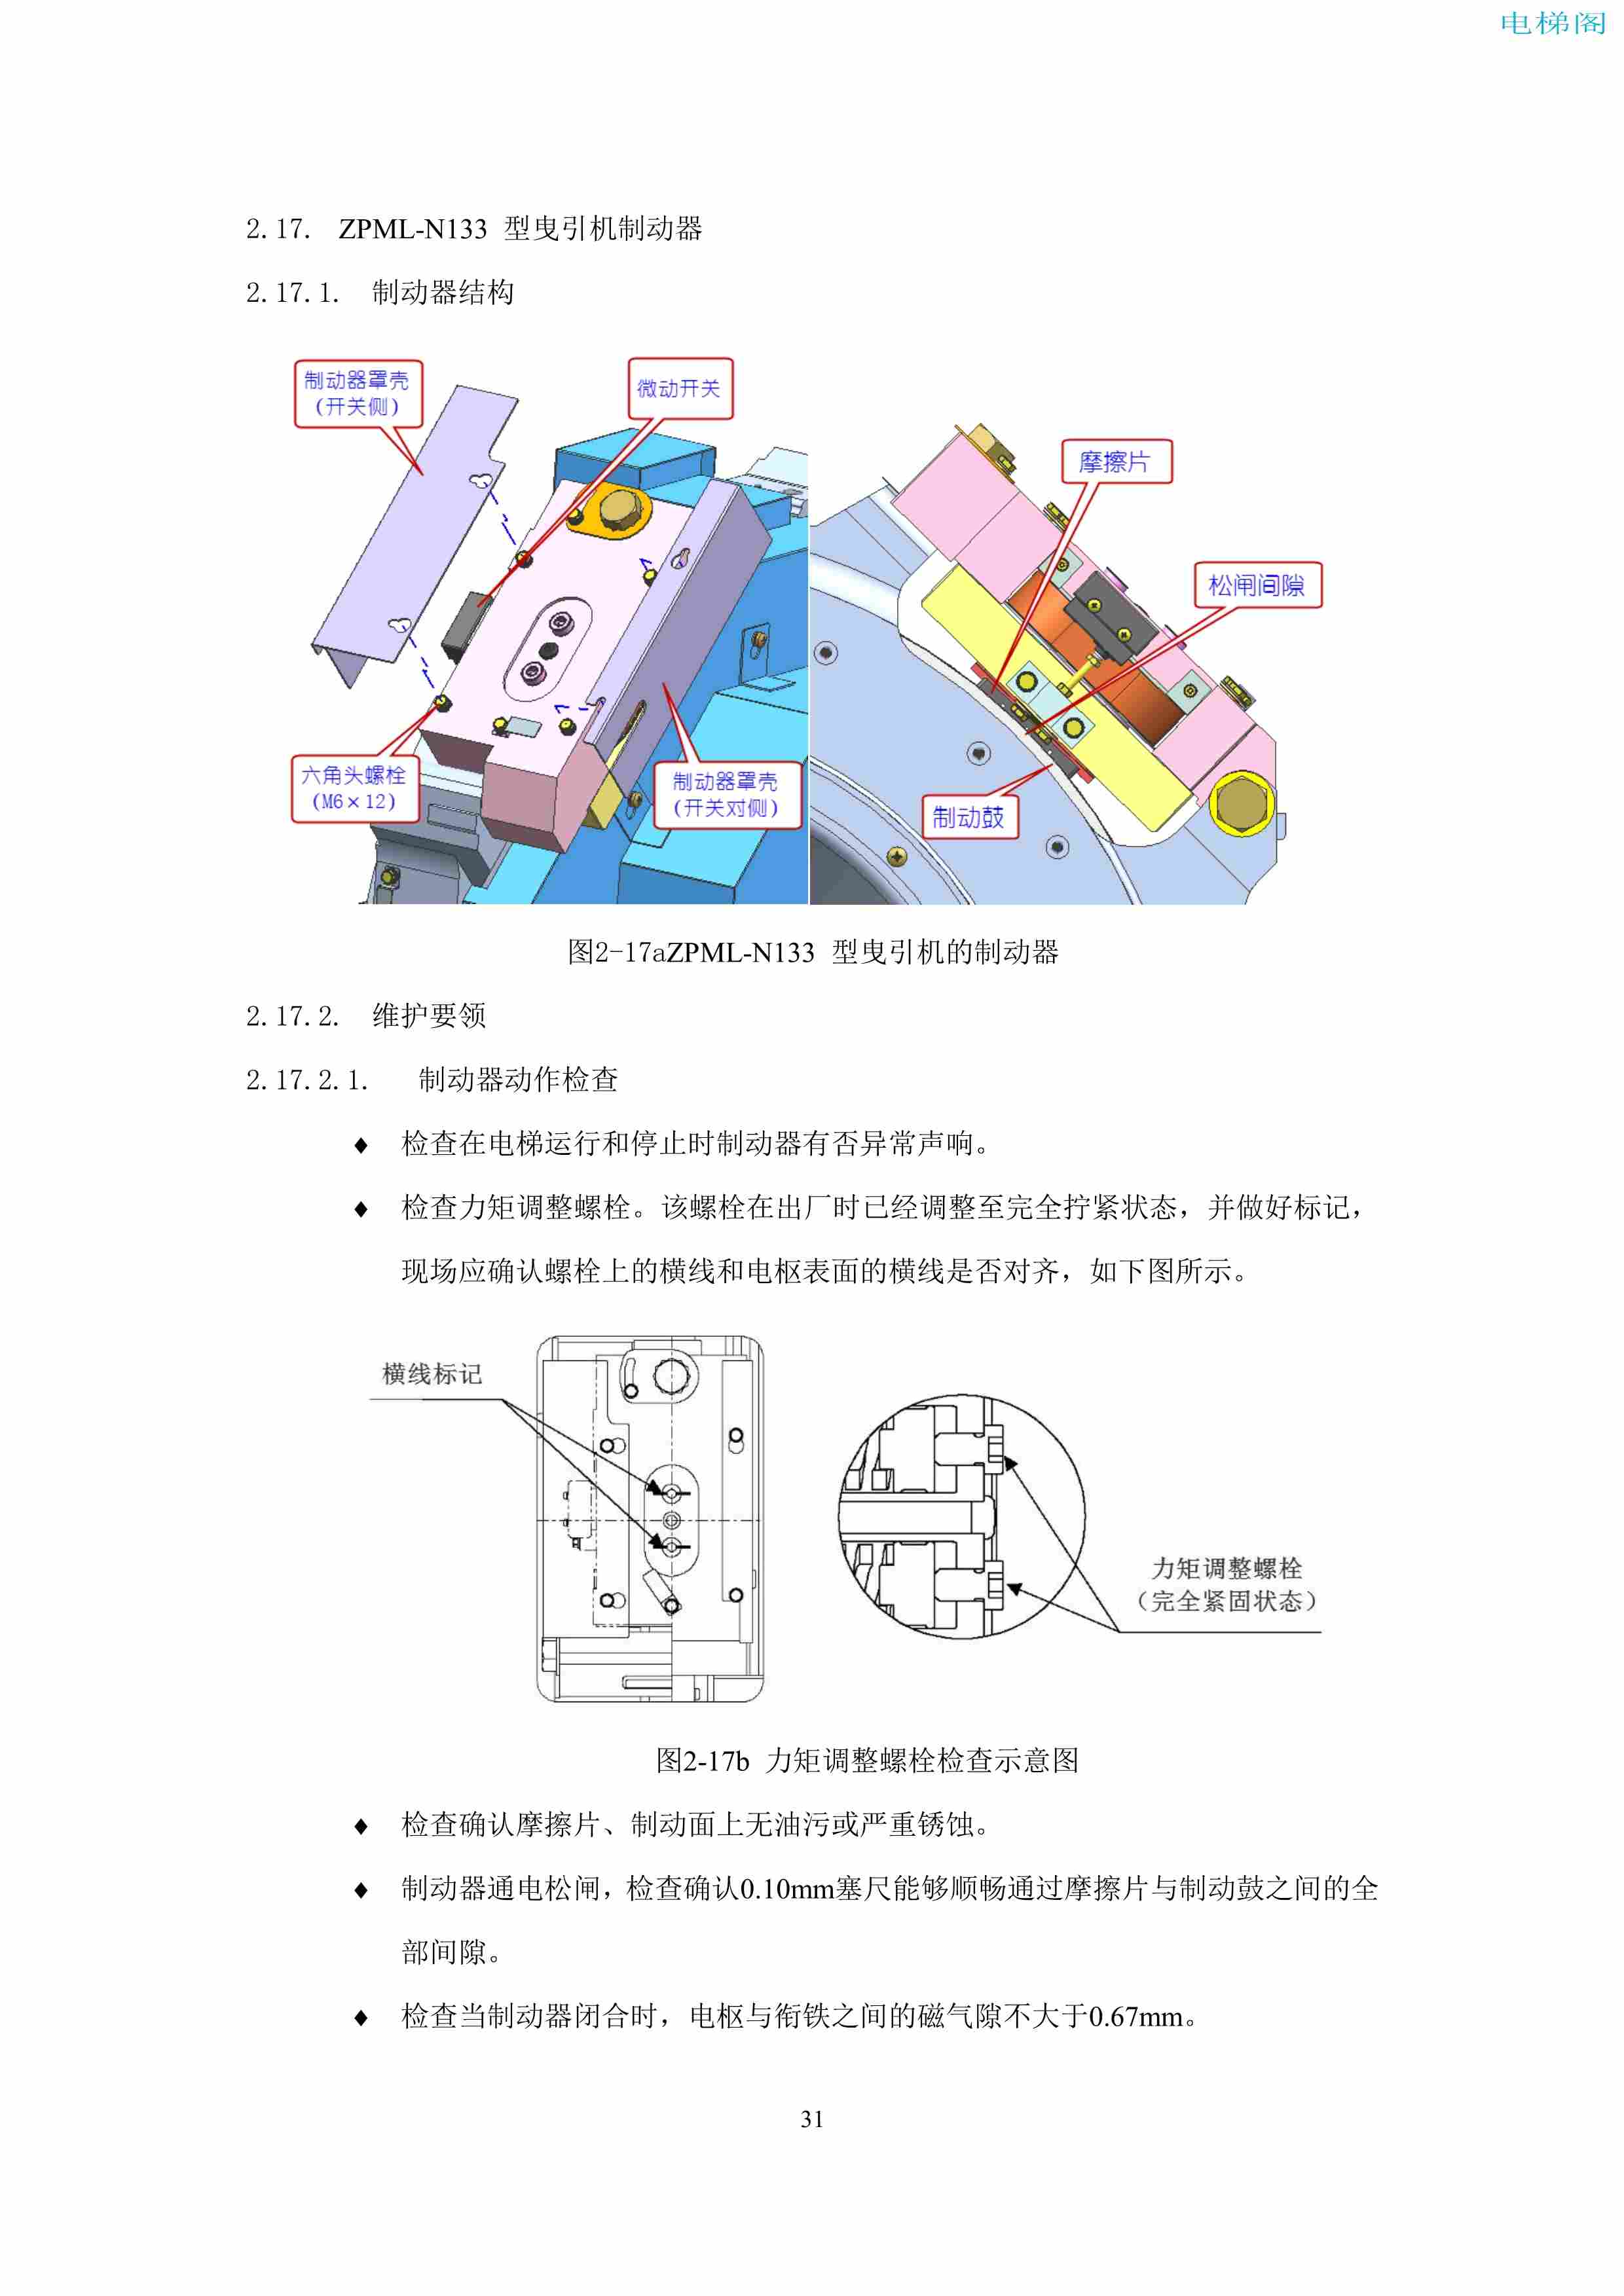 上海三菱电梯有限公司电梯制动器维护作业要领汇编_33.jpg